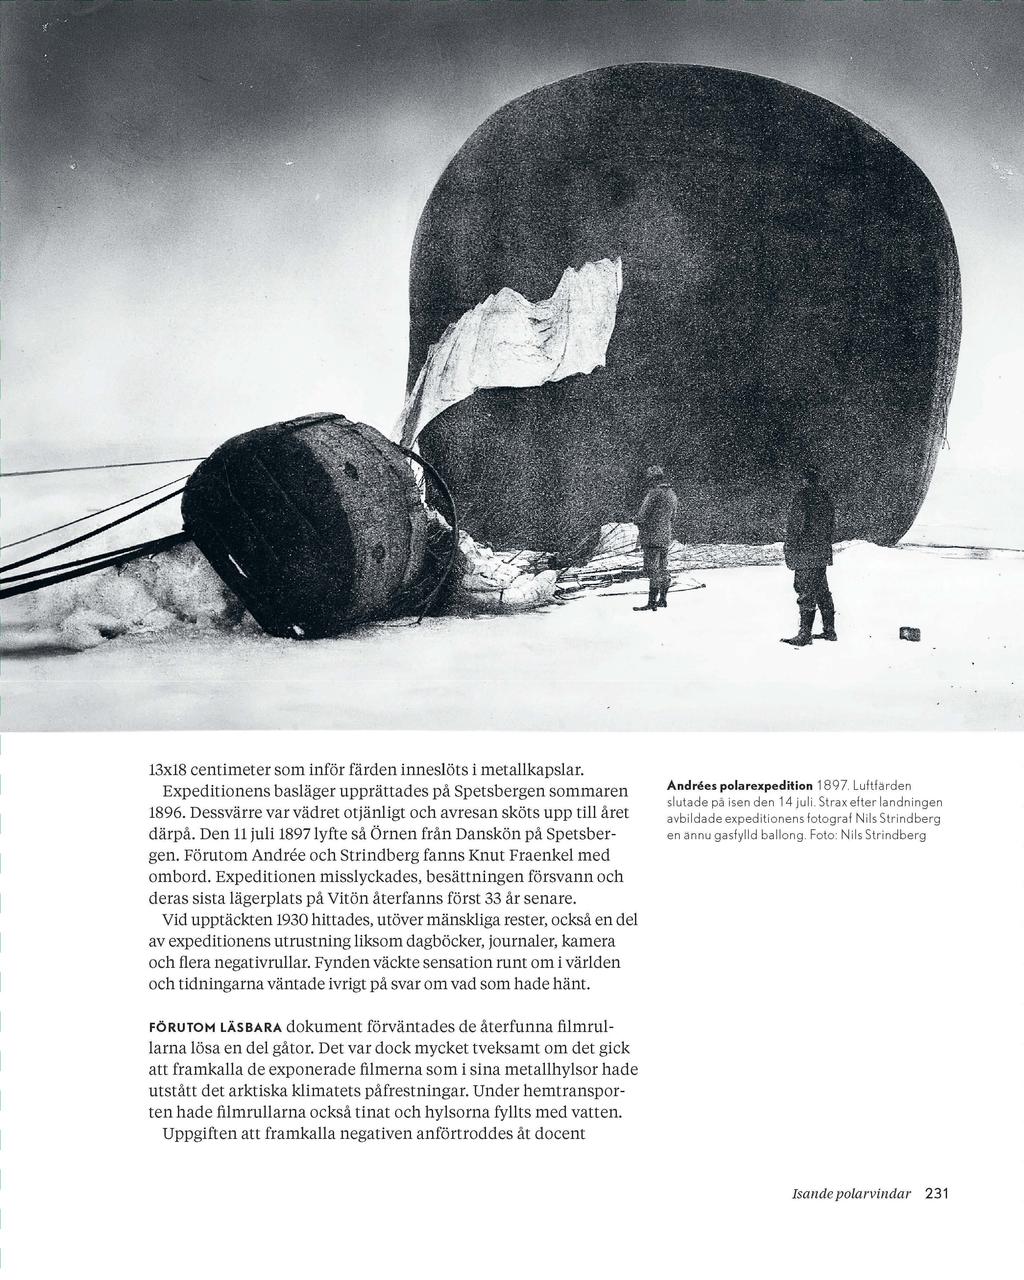 13x18 centimeter som inför färden inneslöts i metallkapslar. Expeditionens basläger upprättades på Spetsbergen sommaren 1896. Dessvärre var vädret otjänligt och avresan sköts upp till året därpå.